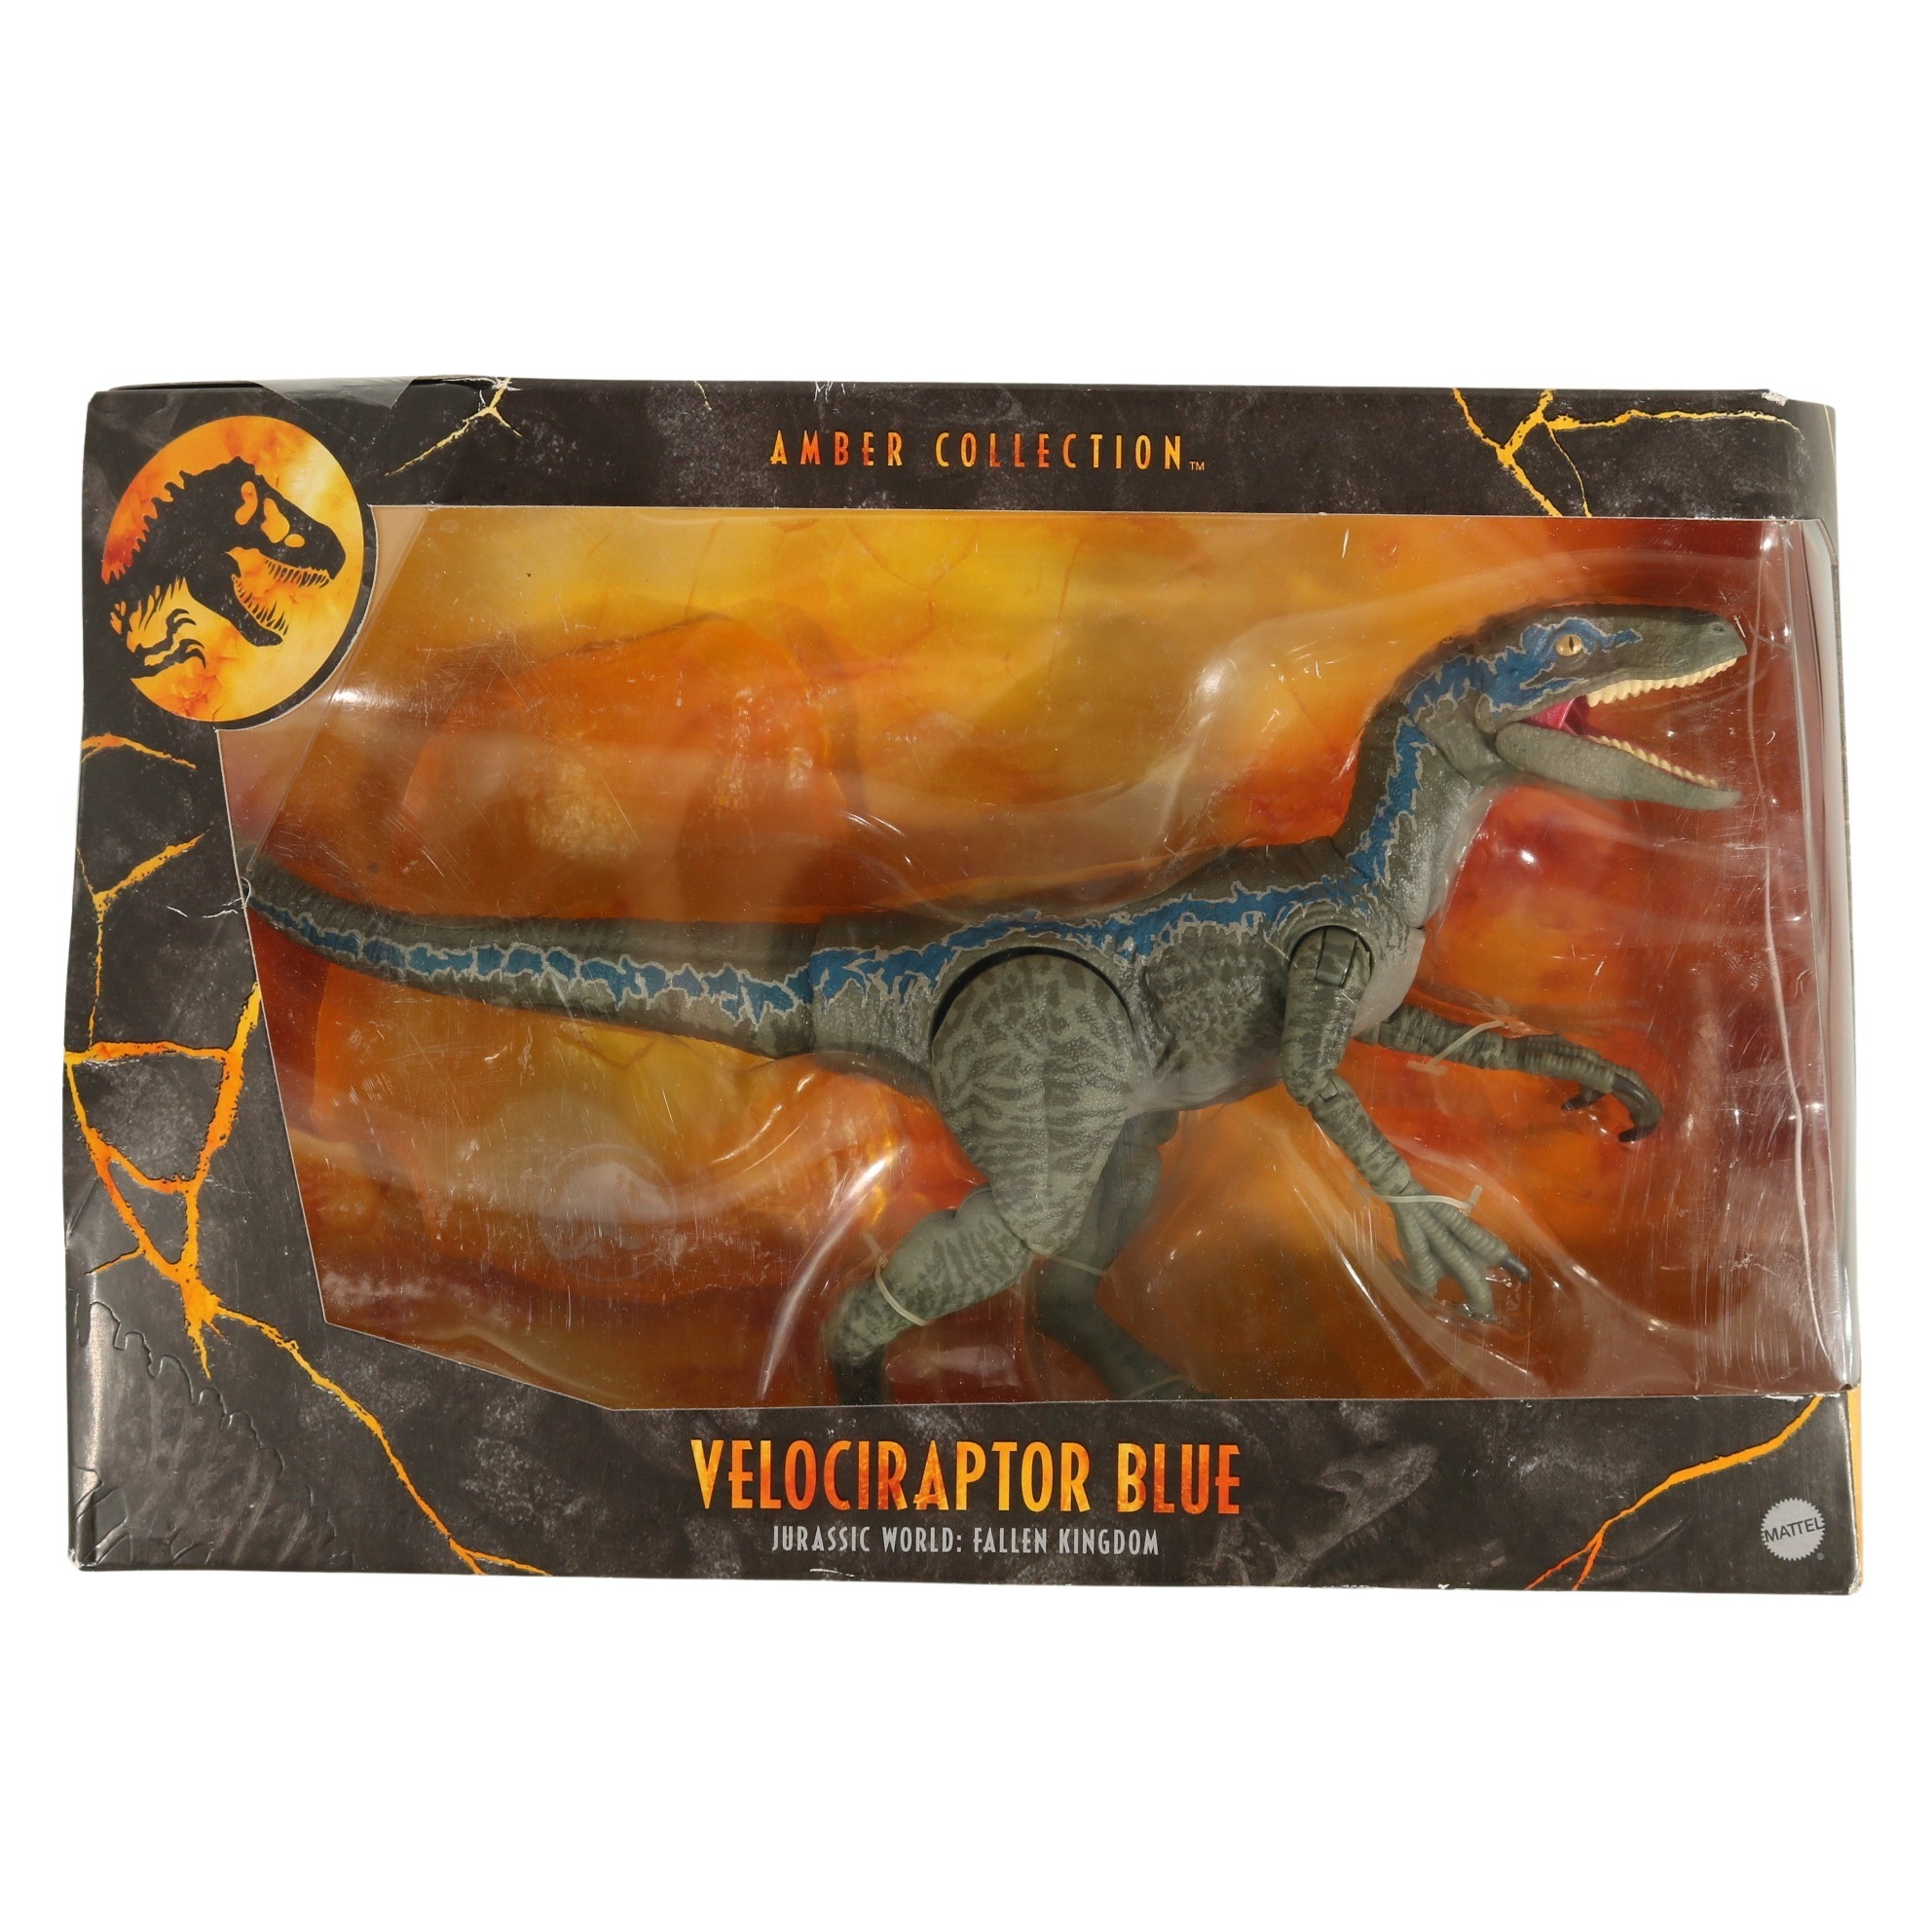 Mattel - Jurassic World Amber Collection - Velociraptor Blue - MISB